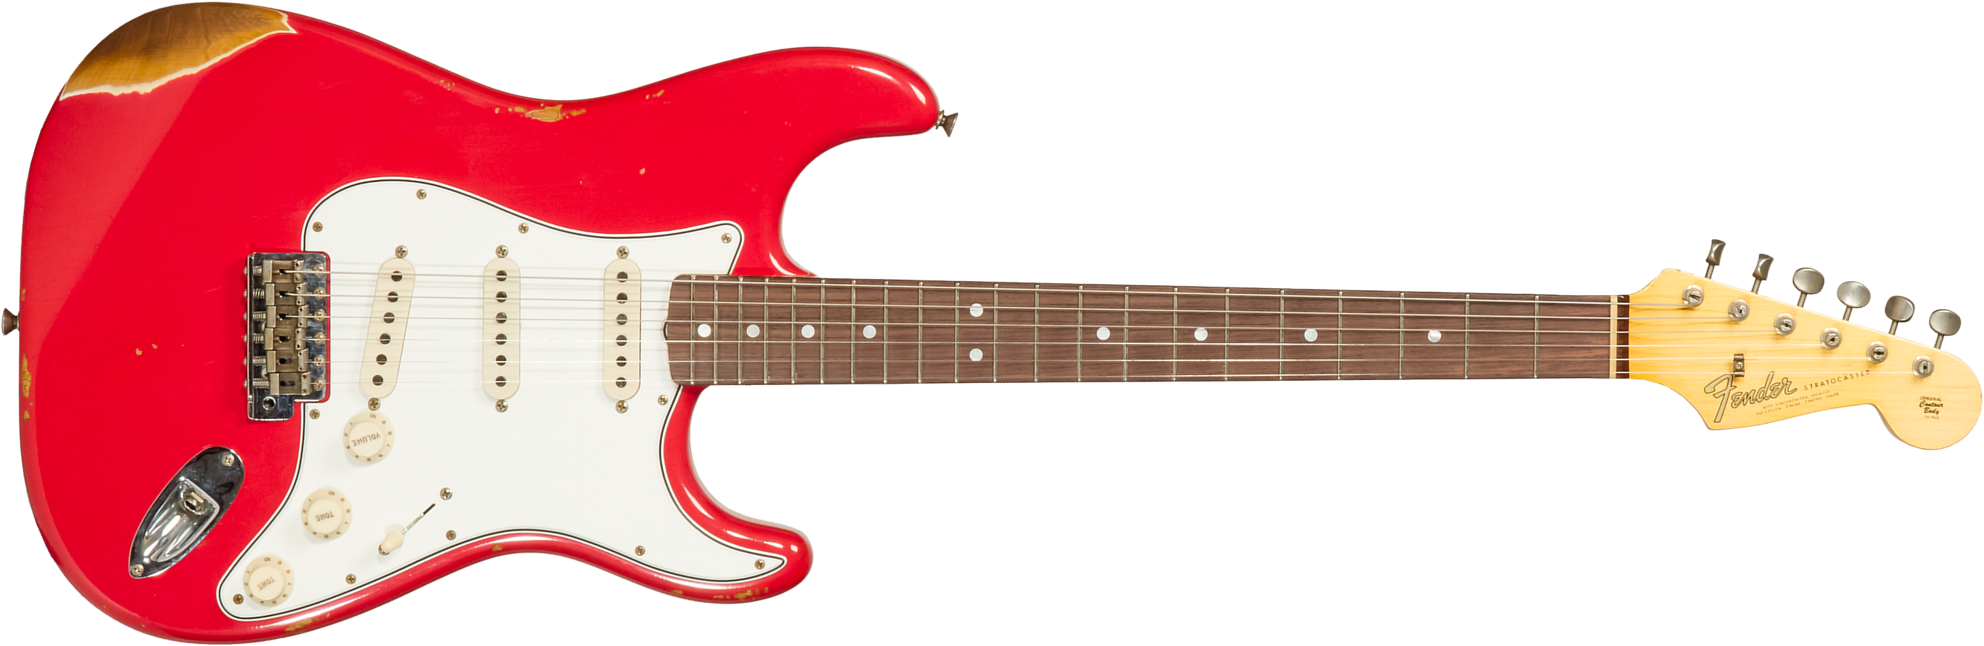 Fender Custom Shop Strat Late 1964 3s Trem Rw #cz568395 - Relic Aged Fiesta Red - Elektrische gitaar in Str-vorm - Main picture